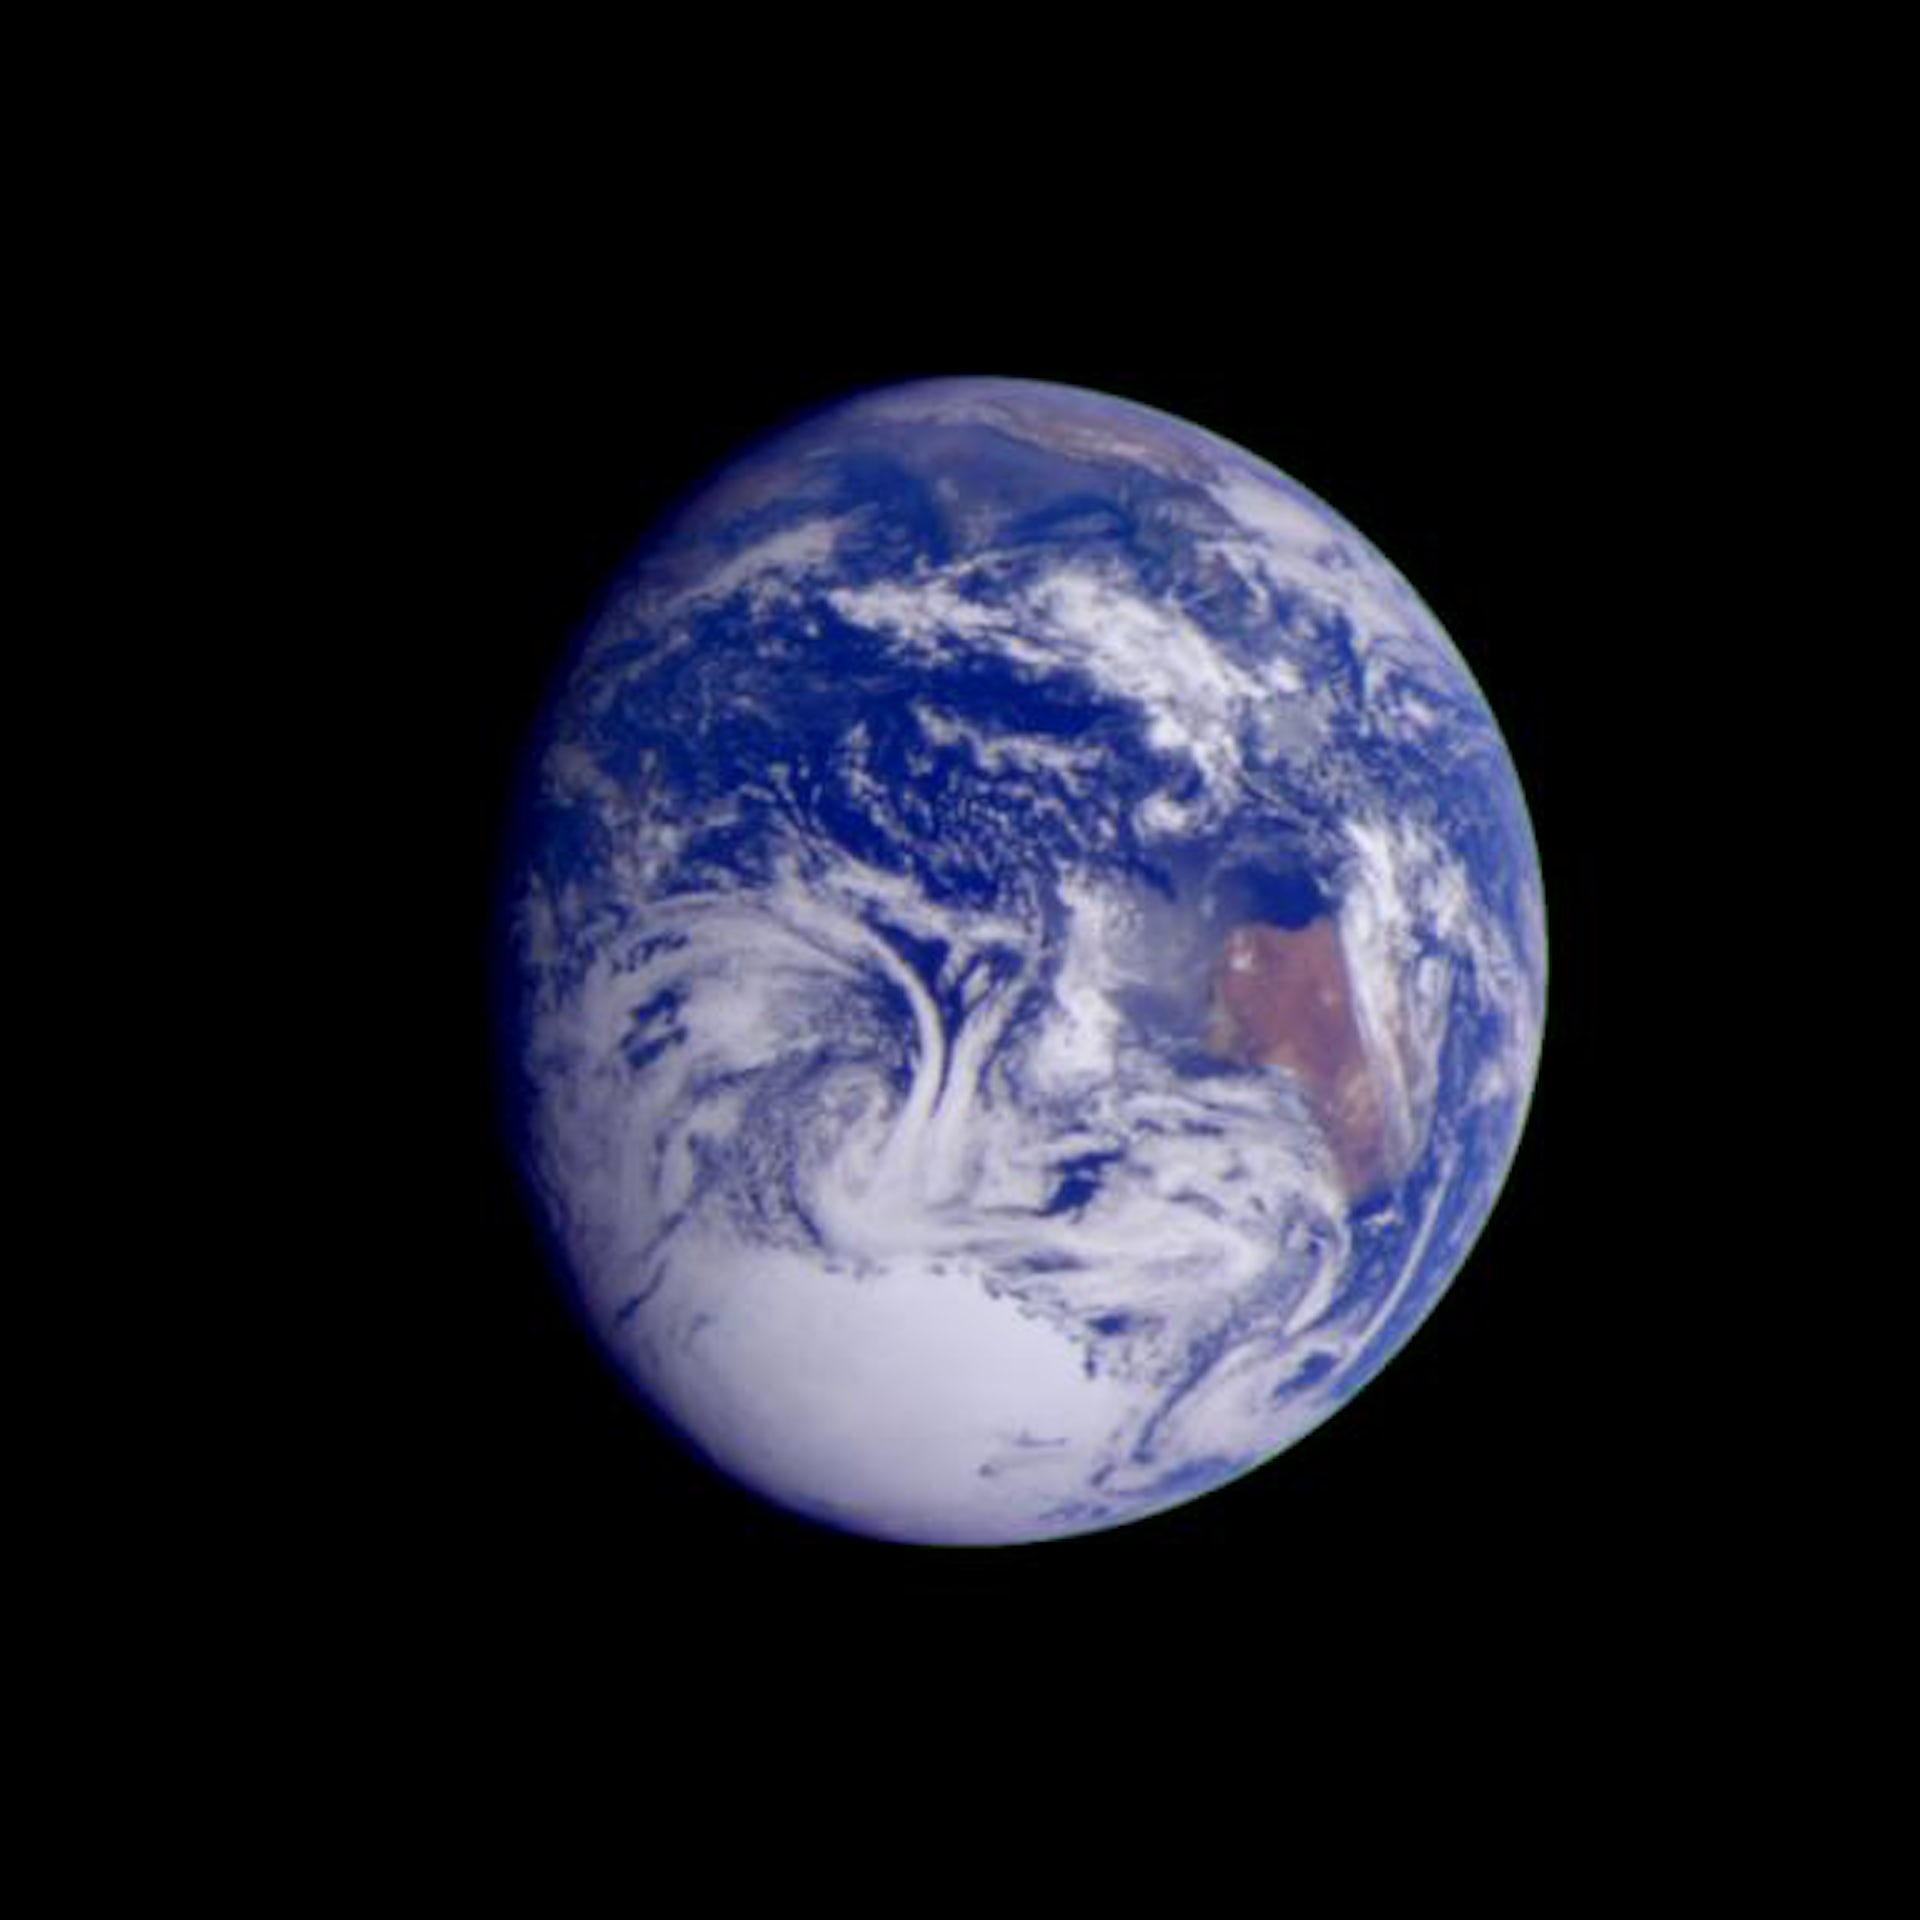 Afbeelding gemaakt door het Galileo-ruimtevaartuig op een afstand van 2.4 miljoen km.